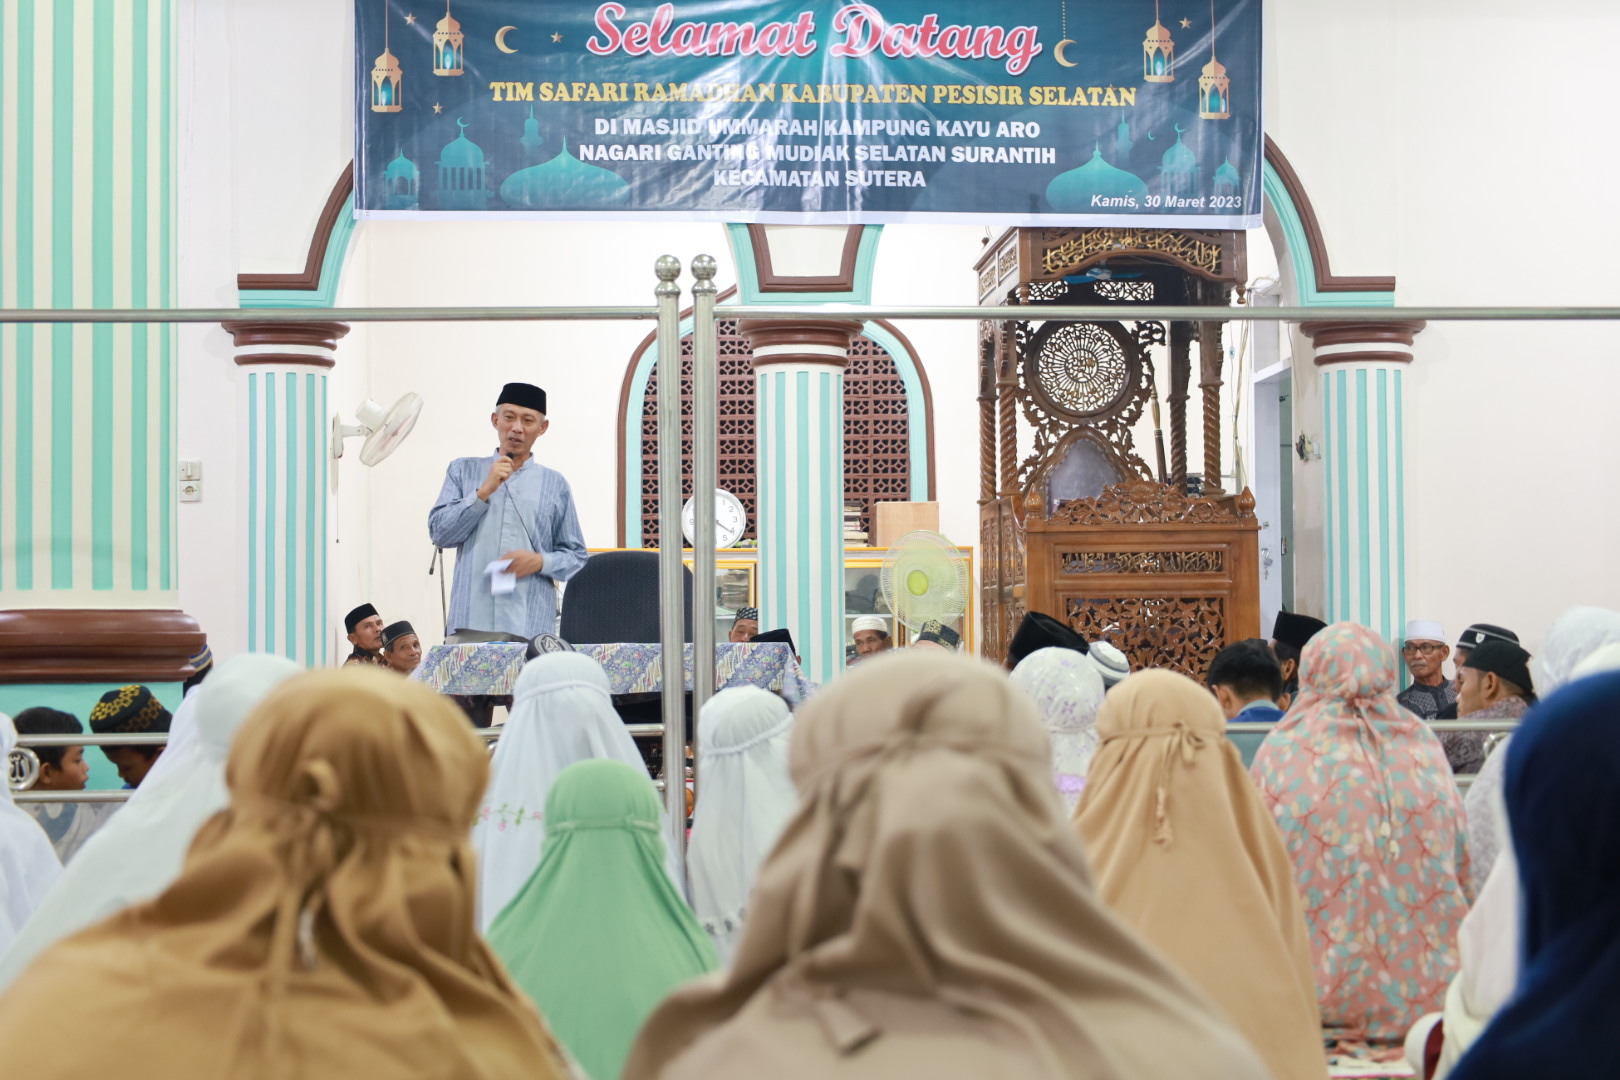 Tim lll Safari Ramadan Kabupaten Pesisir Selatan Kunjungi Kampung Kayu Aro